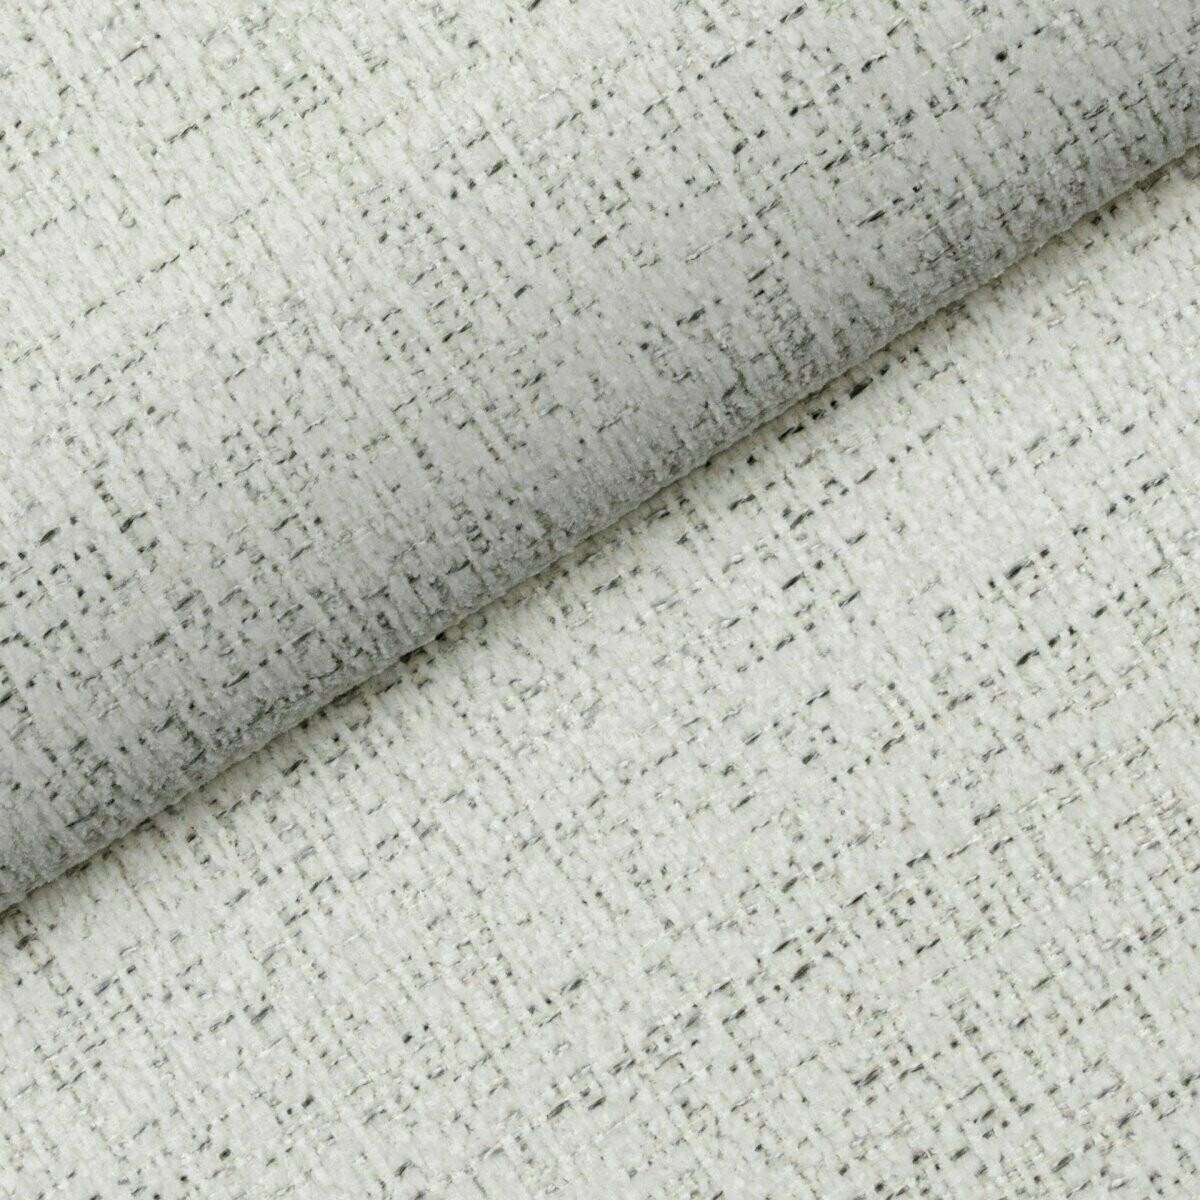 Biała tkanina Luna 02 Fargotex nadaje się idealnie na narożniki, kanapy, fotele czy krzesła. Posiada właściwości łatwo czyszczące.